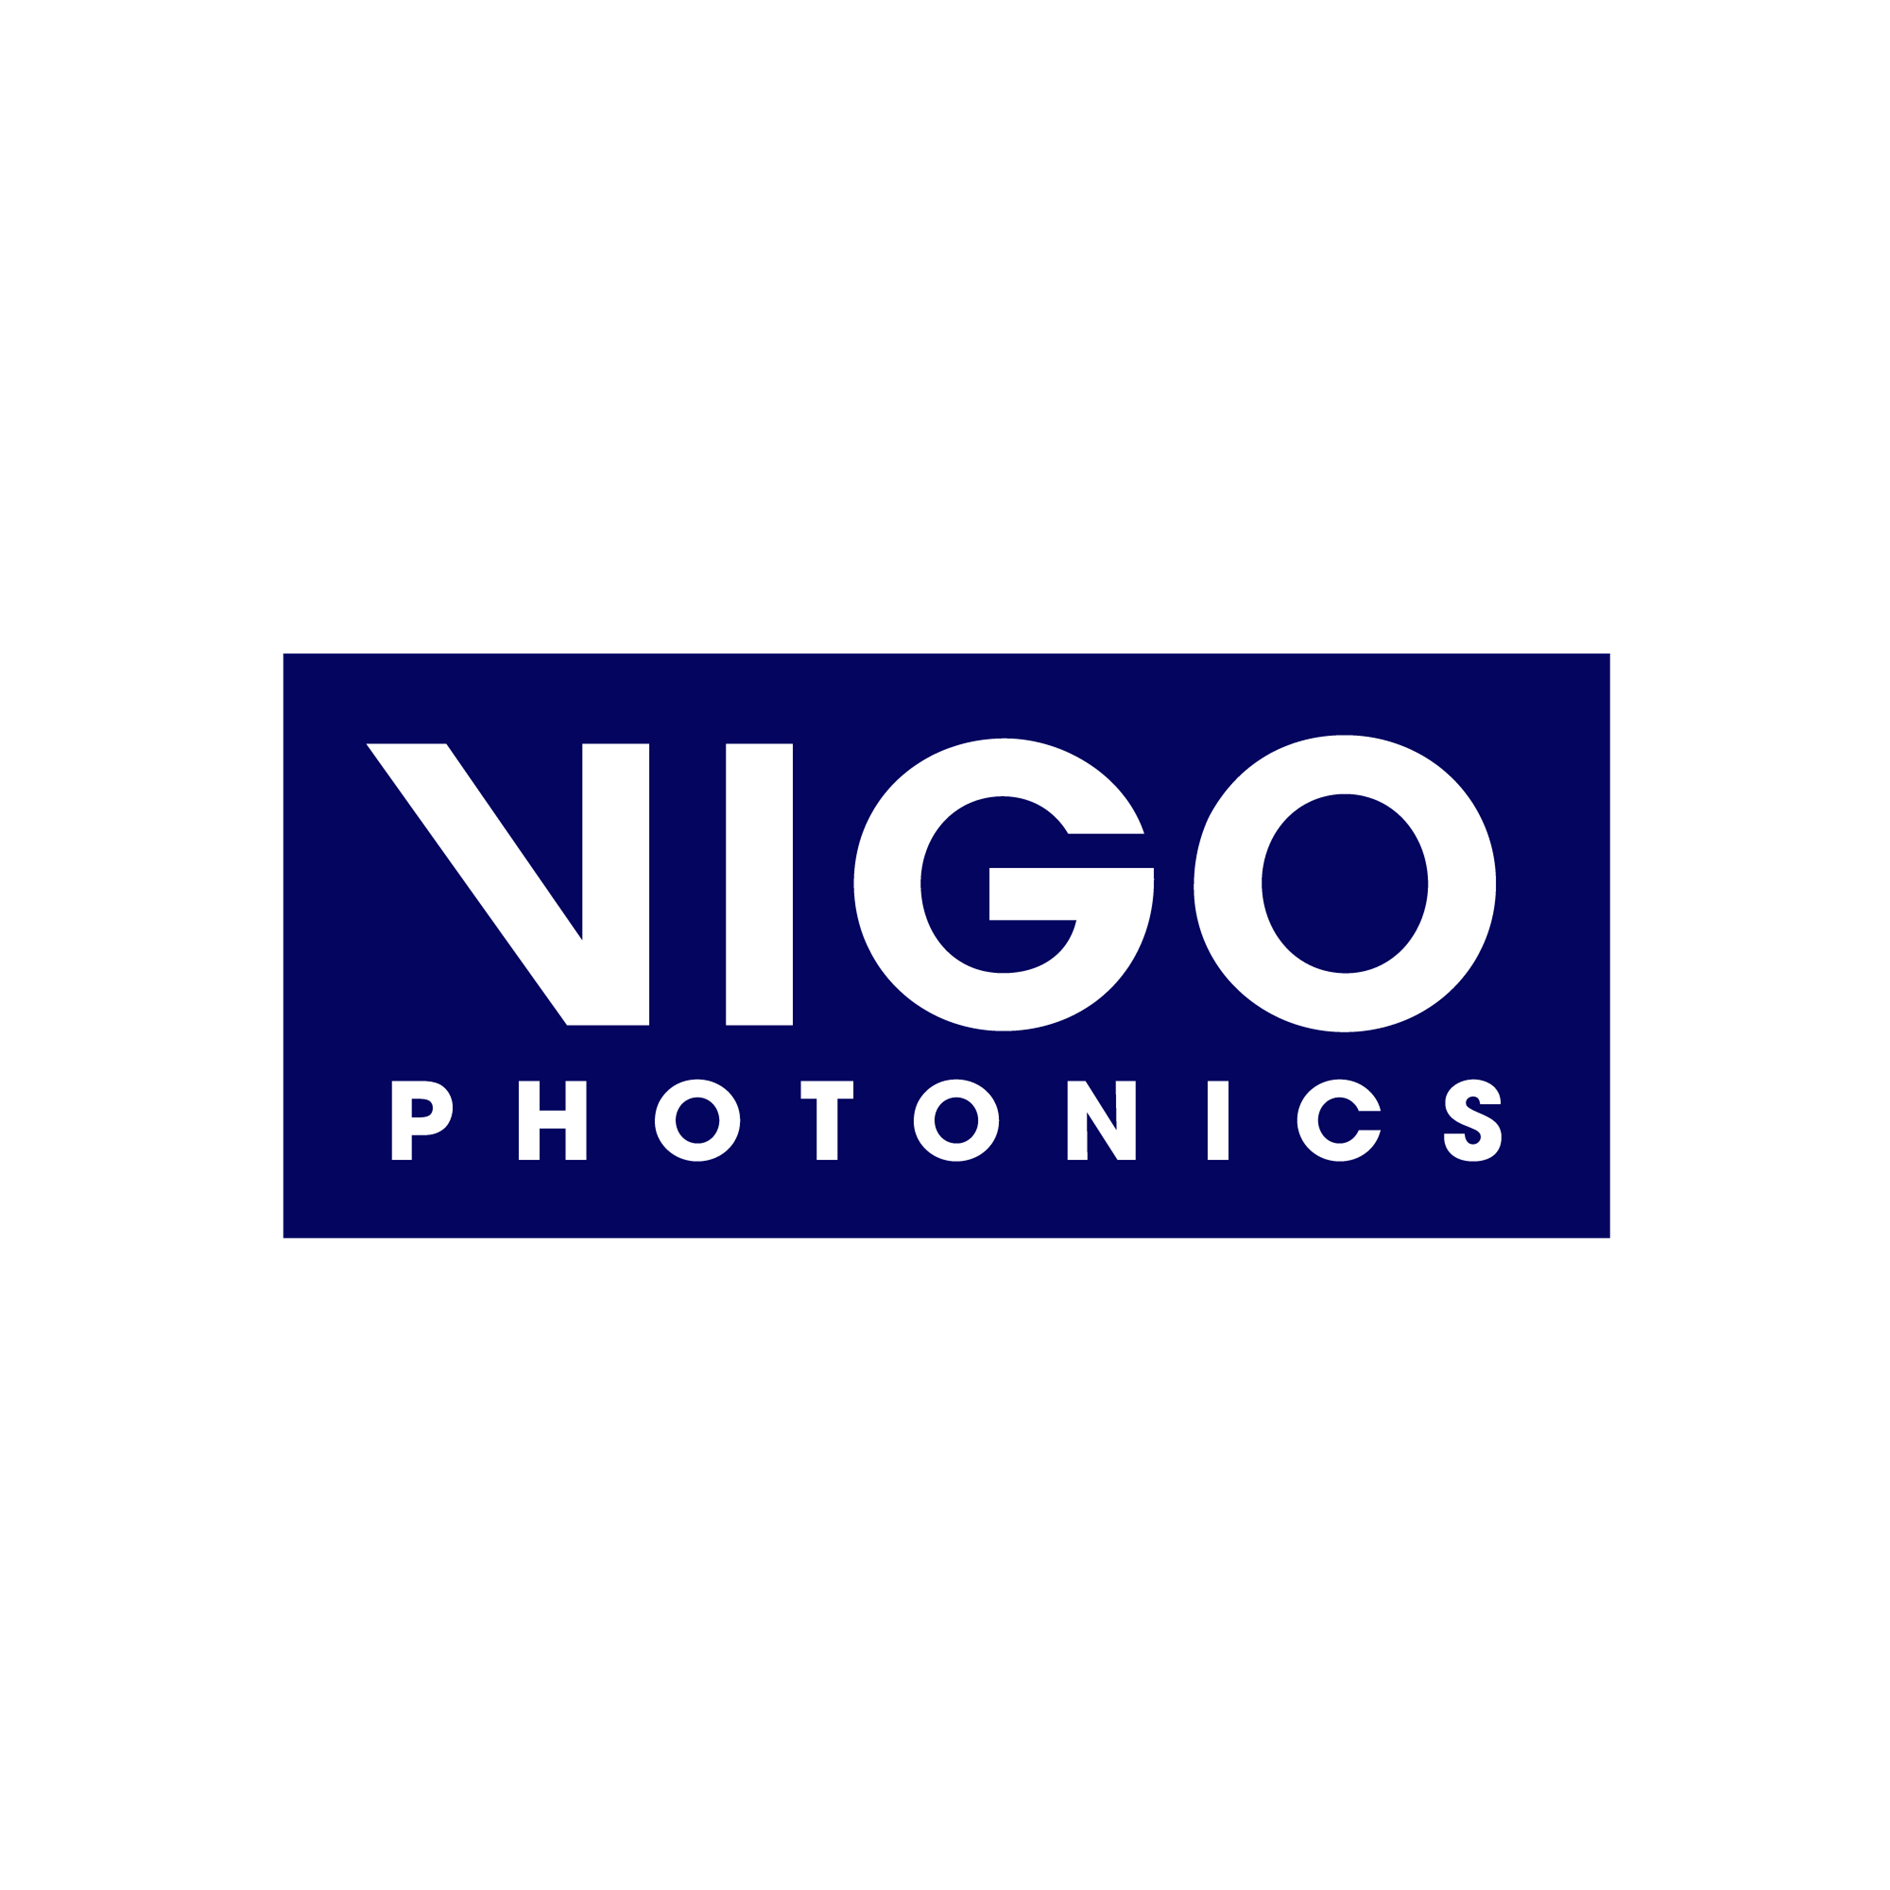 VIGO Photonics zajmuje czołową pozycję na światowym rynku niechłodzonych detektorów fotonowych średniej i dalekiej podczerwieni.